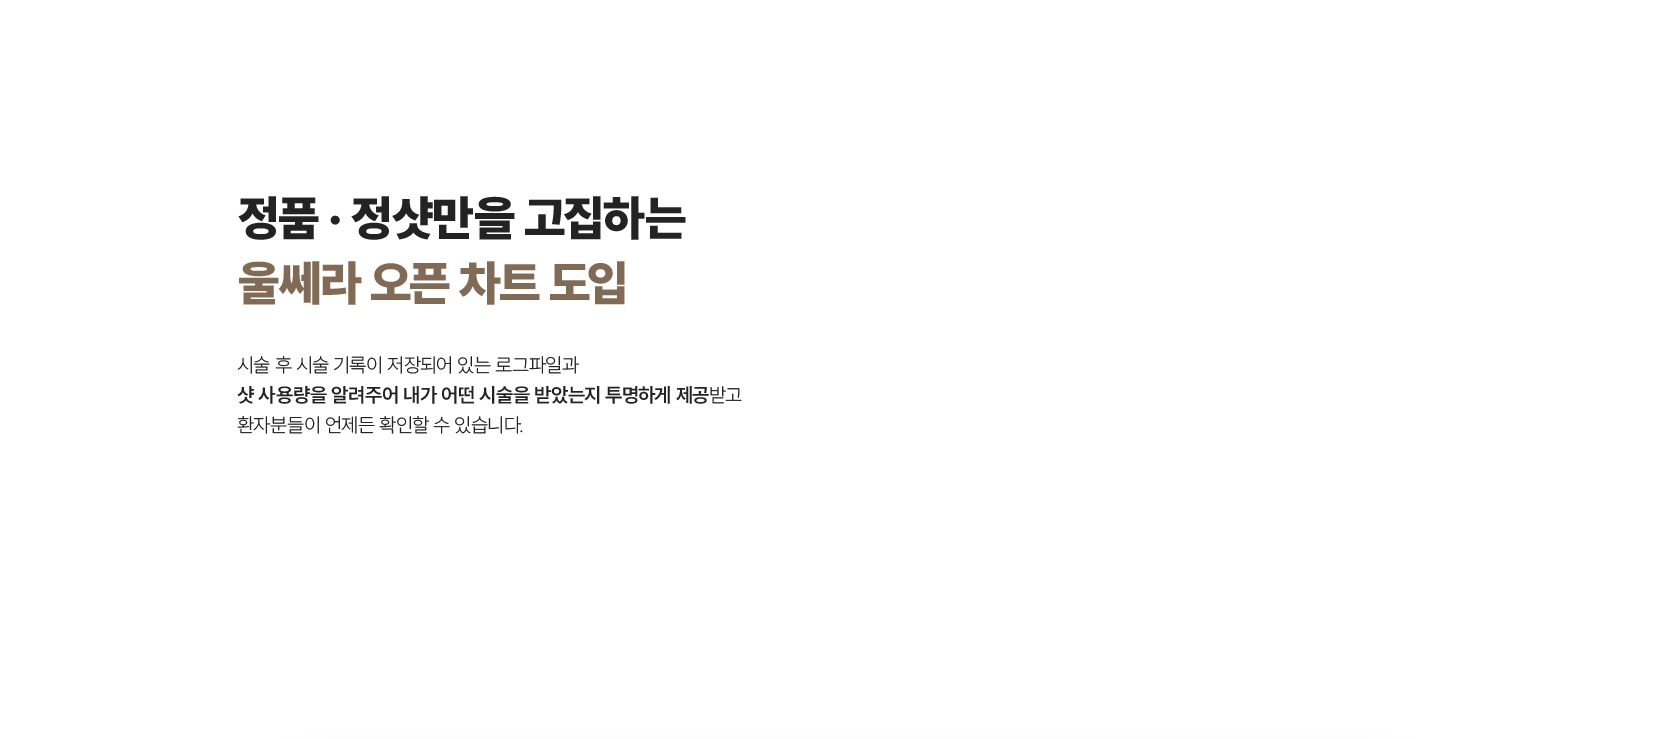 울쎄라정품팁,불독살,리프팅홈케어,슈링크300샷가격,튠라이너효과,안티에이징성형,인어젯,미용기기,인모드에어젯,강남슈링크